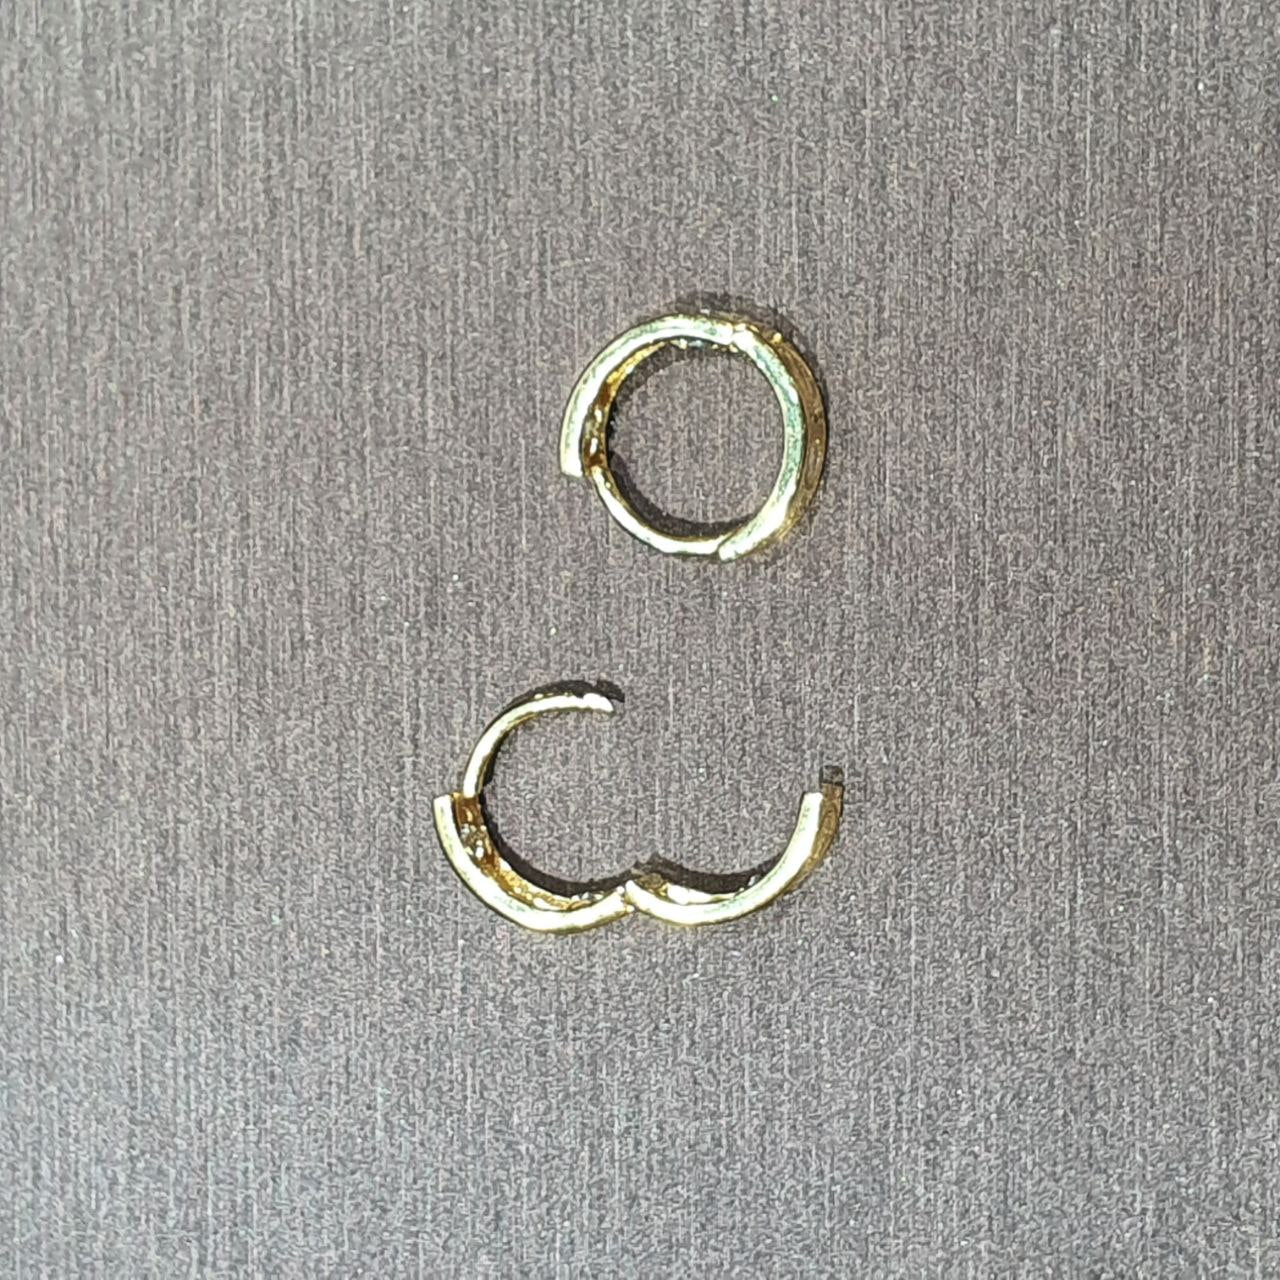 22k / 916 Gold C design Loop Earring-916 gold-Best Gold Shop